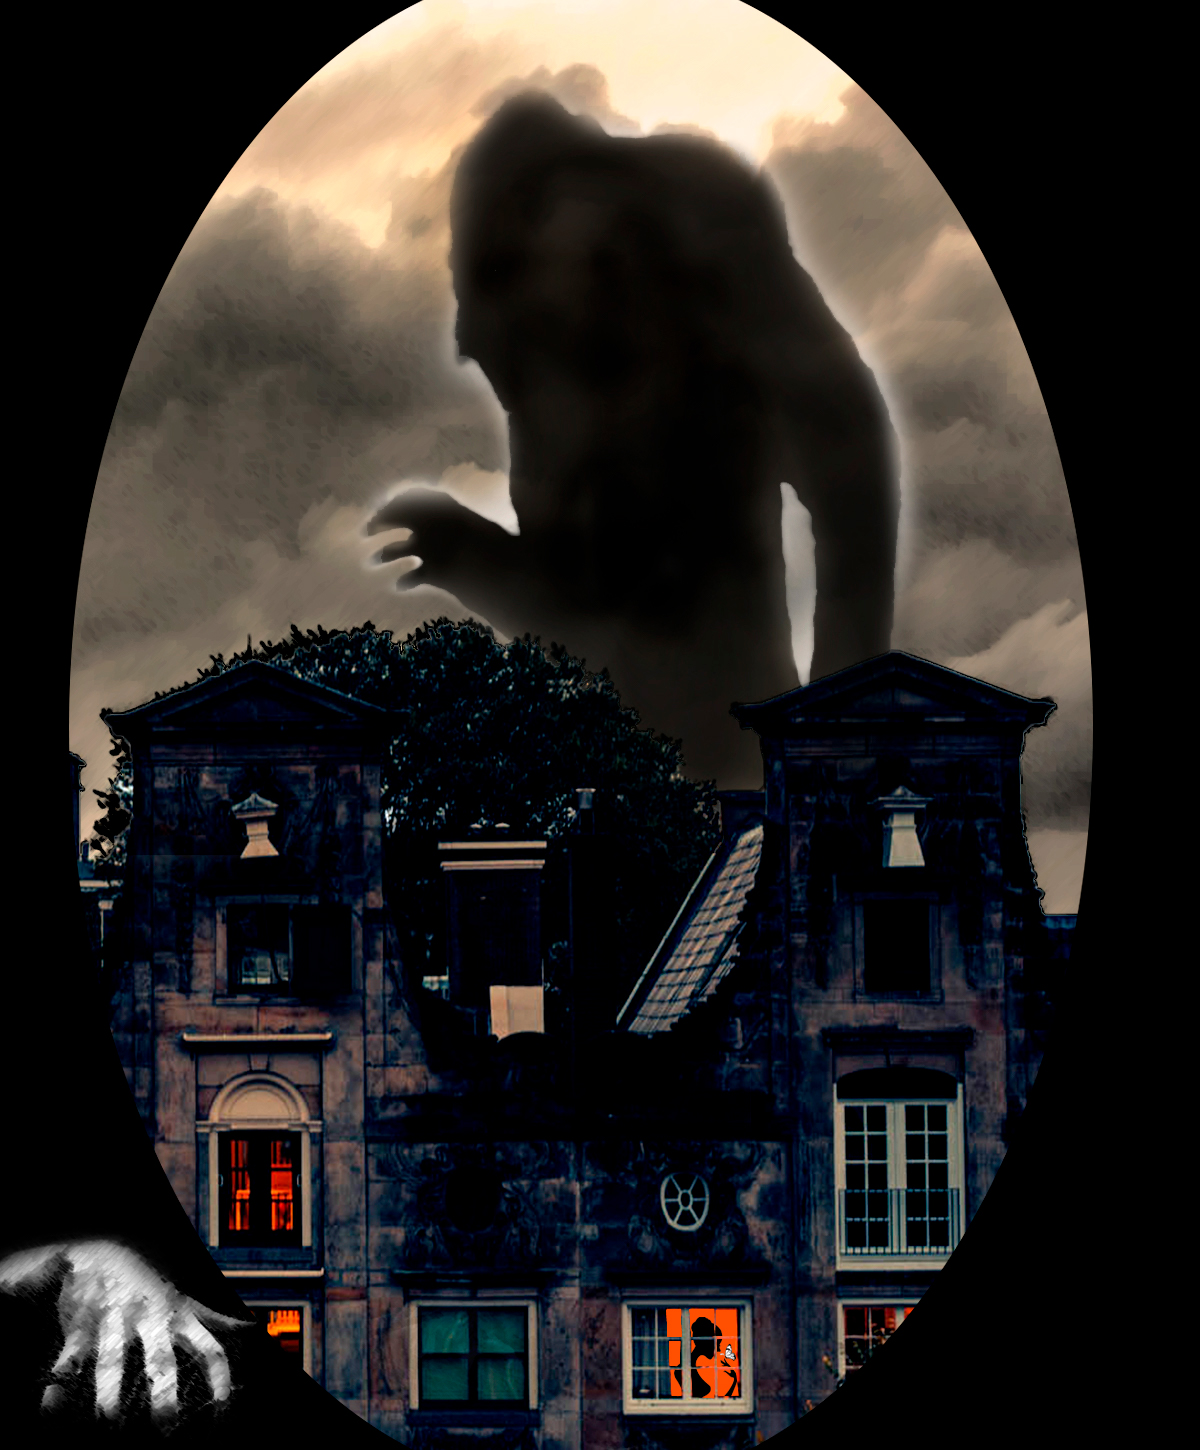 Imagen de una sombra gigante de miedo sobre unas casas de noche con una mano en una esquina. Loco Mundo del Arte y la Bohemia